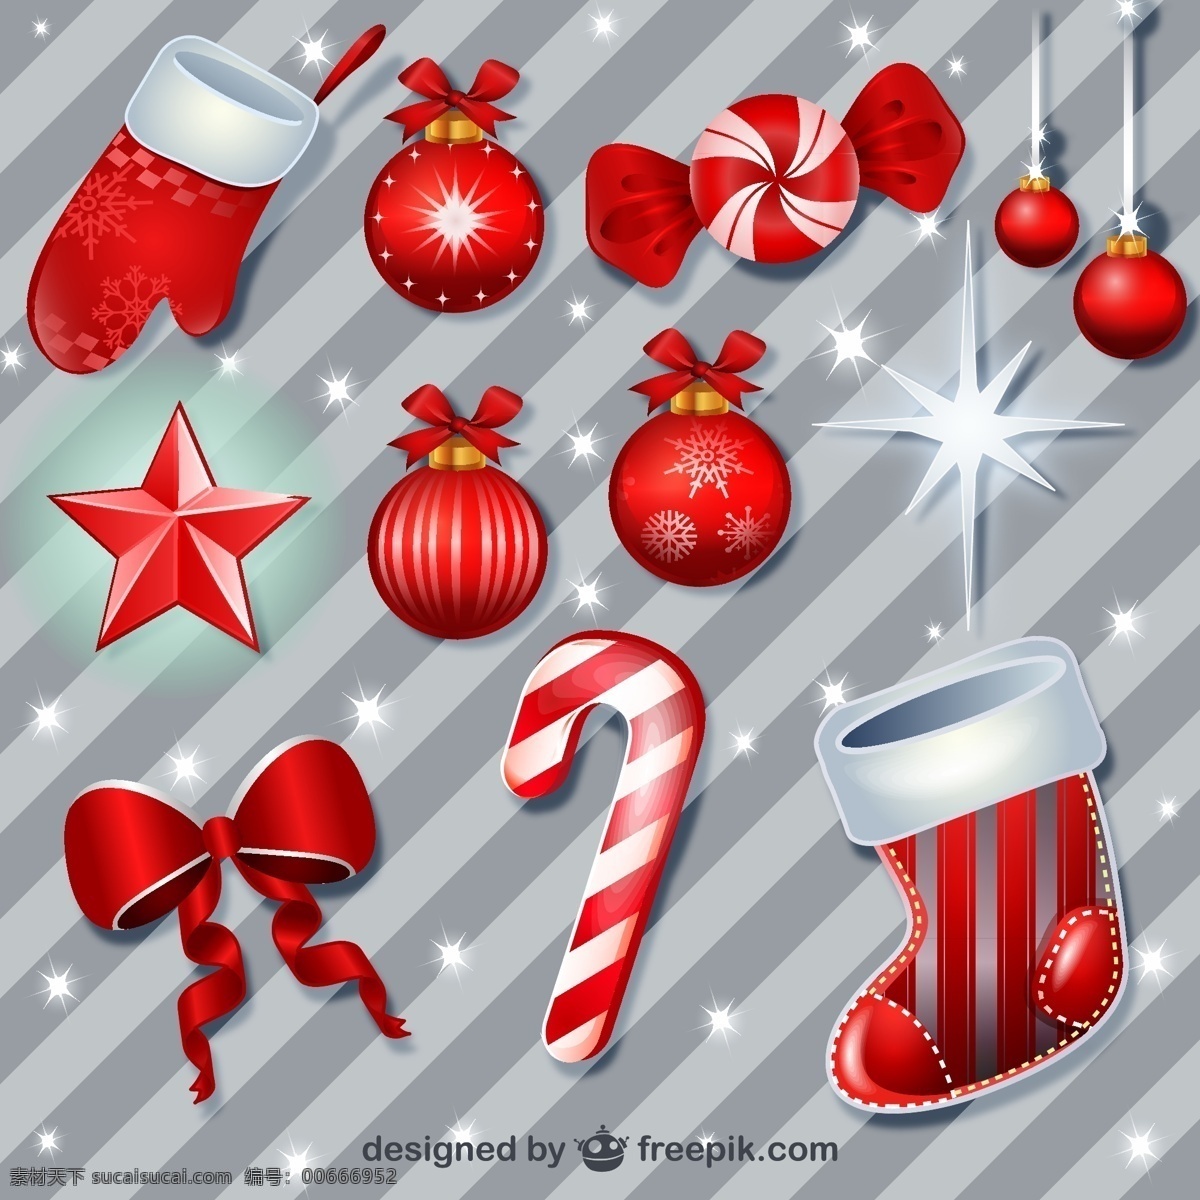 红色 圣诞挂件 包 圣诞节 装饰 装饰球 圣诞球 圣诞装饰 玩具 球 圣诞装饰品 装饰品 圣诞饰品 挂件 灰色